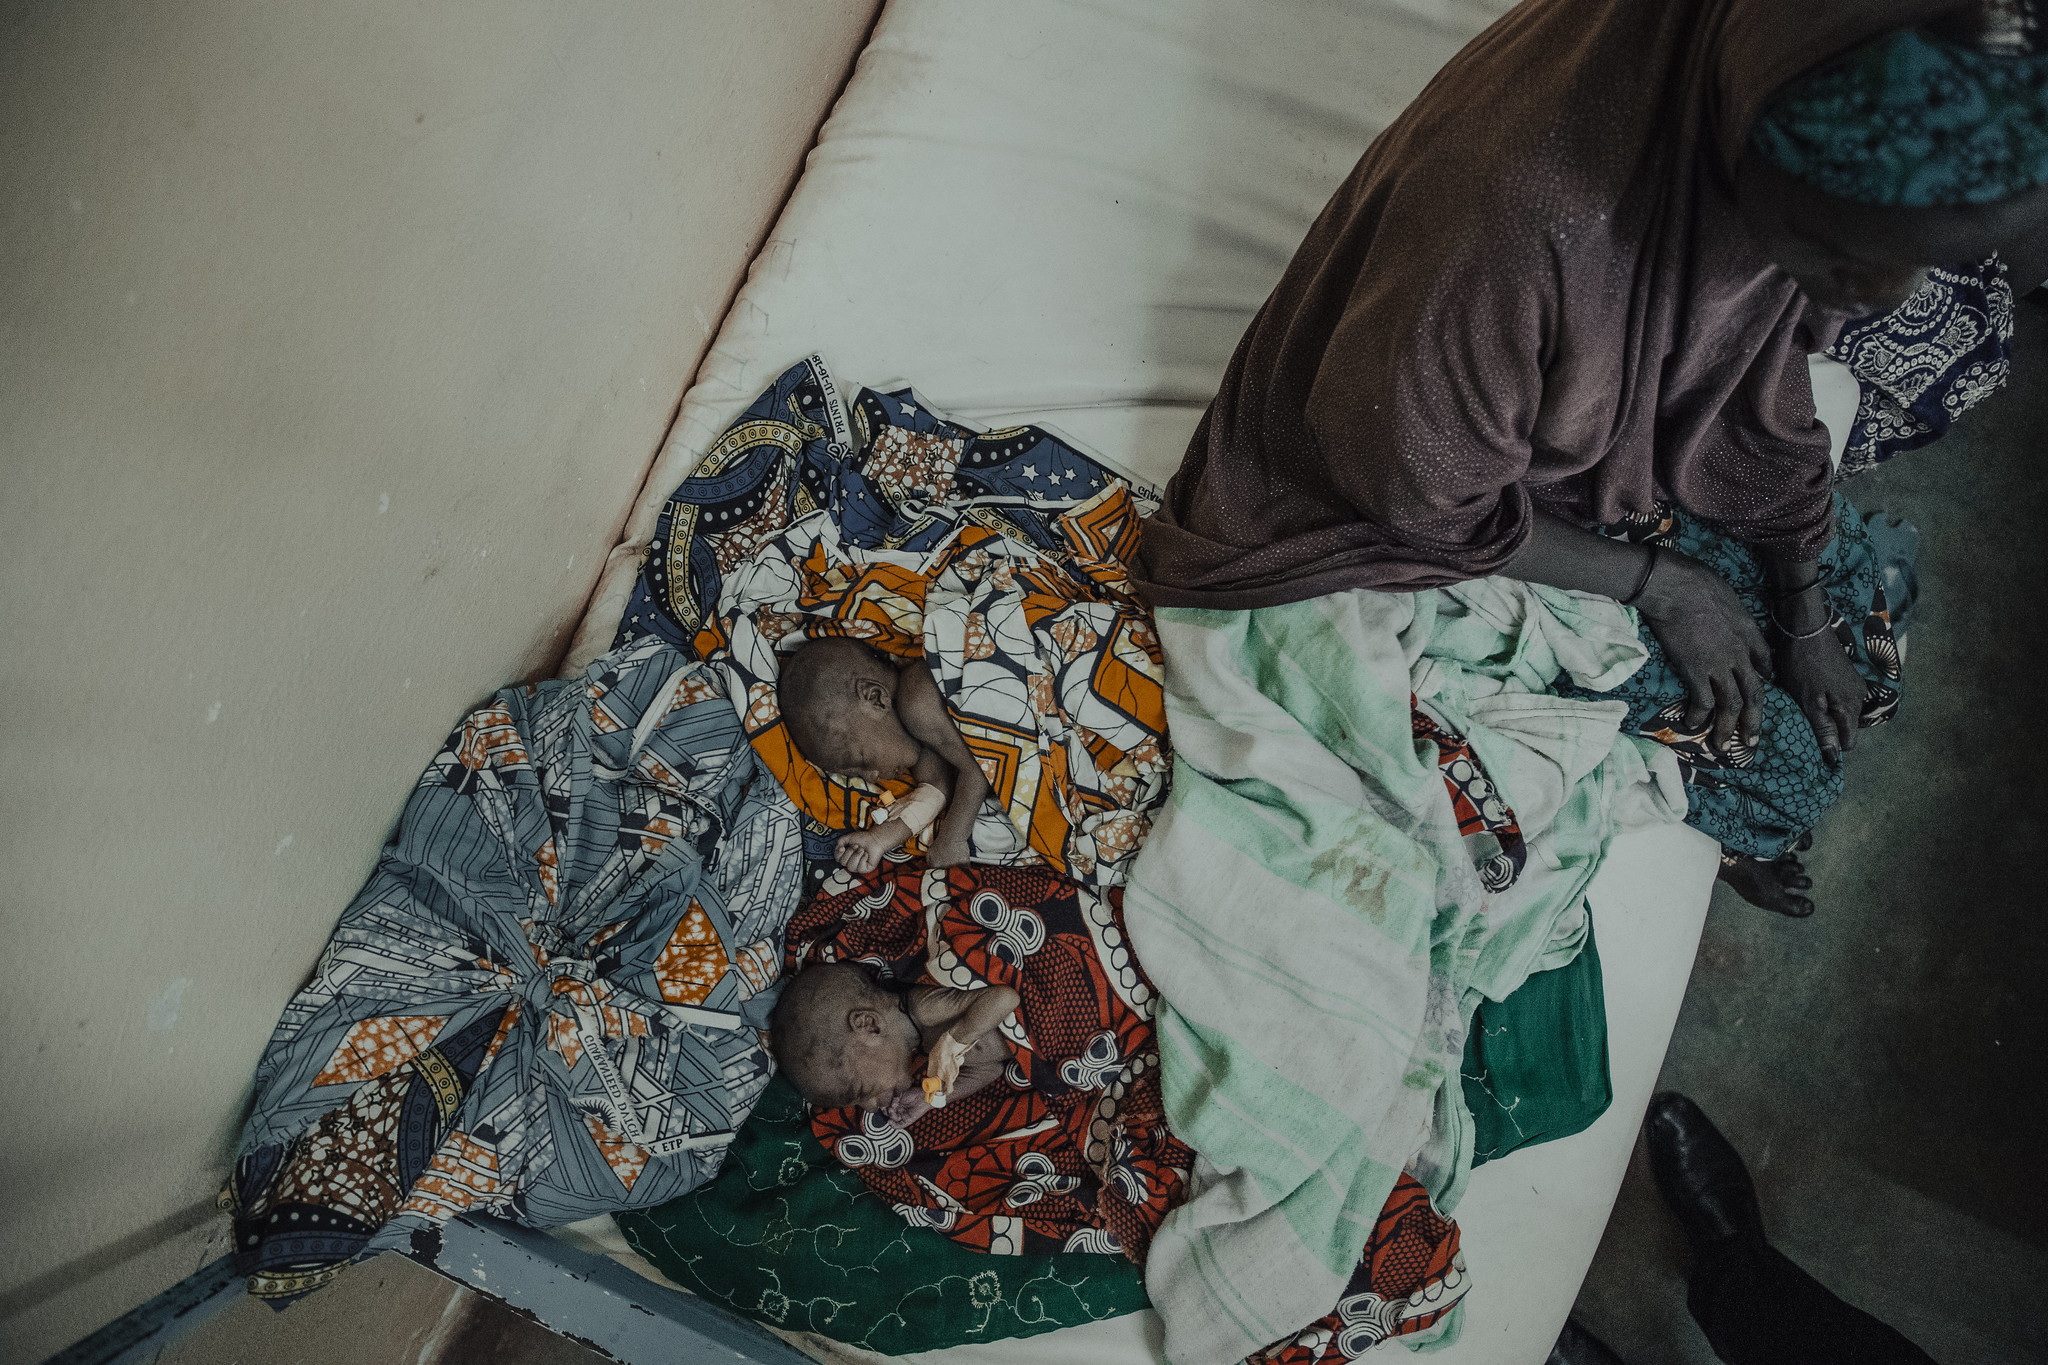 [Rediffusion] Accouchements à domicile dans la commune rurale de Tondikandia : quels risques pour la mère et le nouveau-né ?